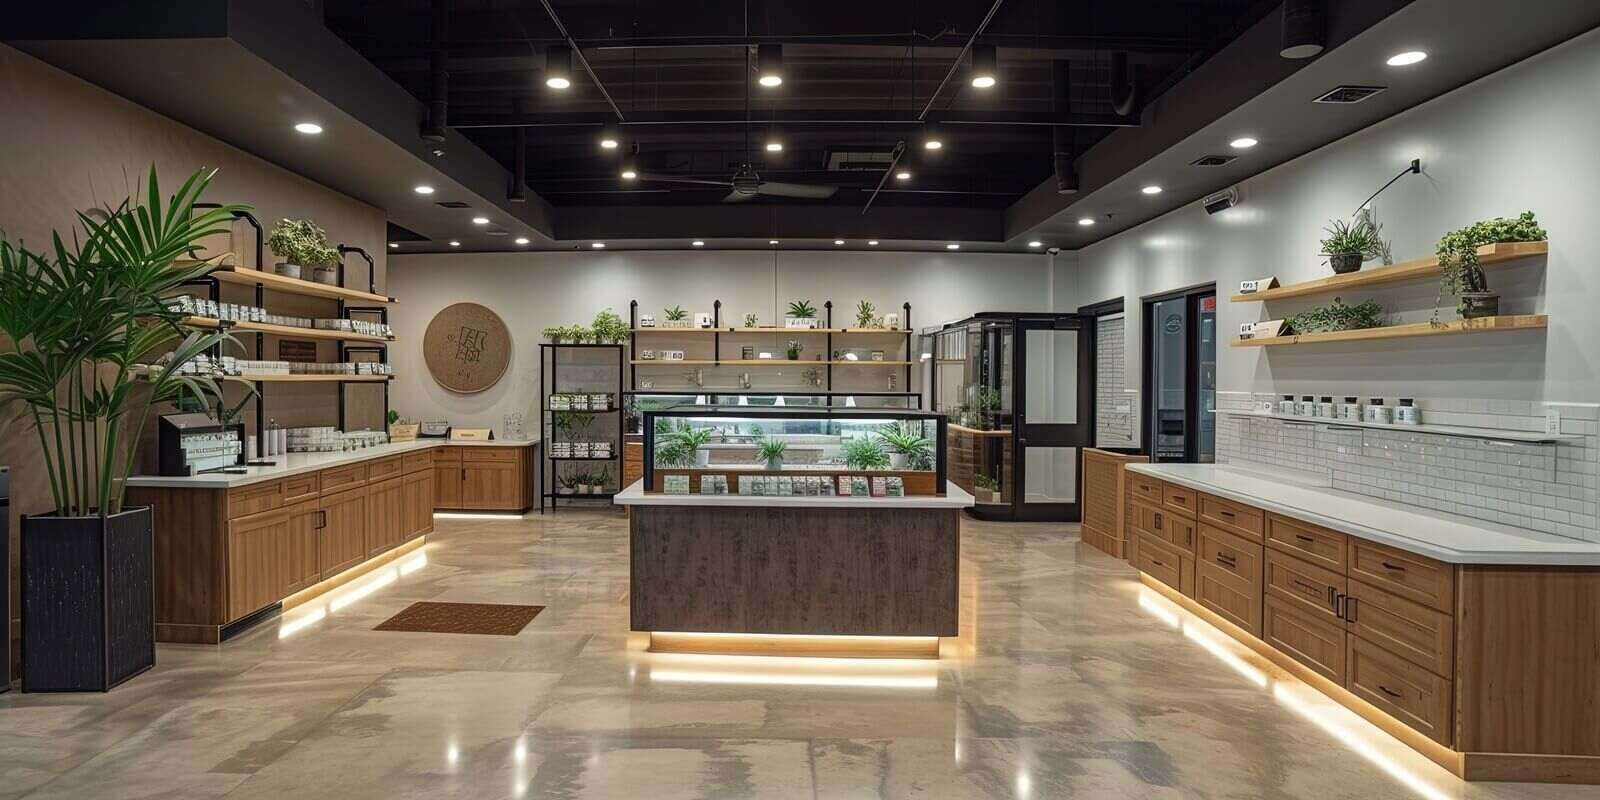 interior of boston marijuana dispensary facility